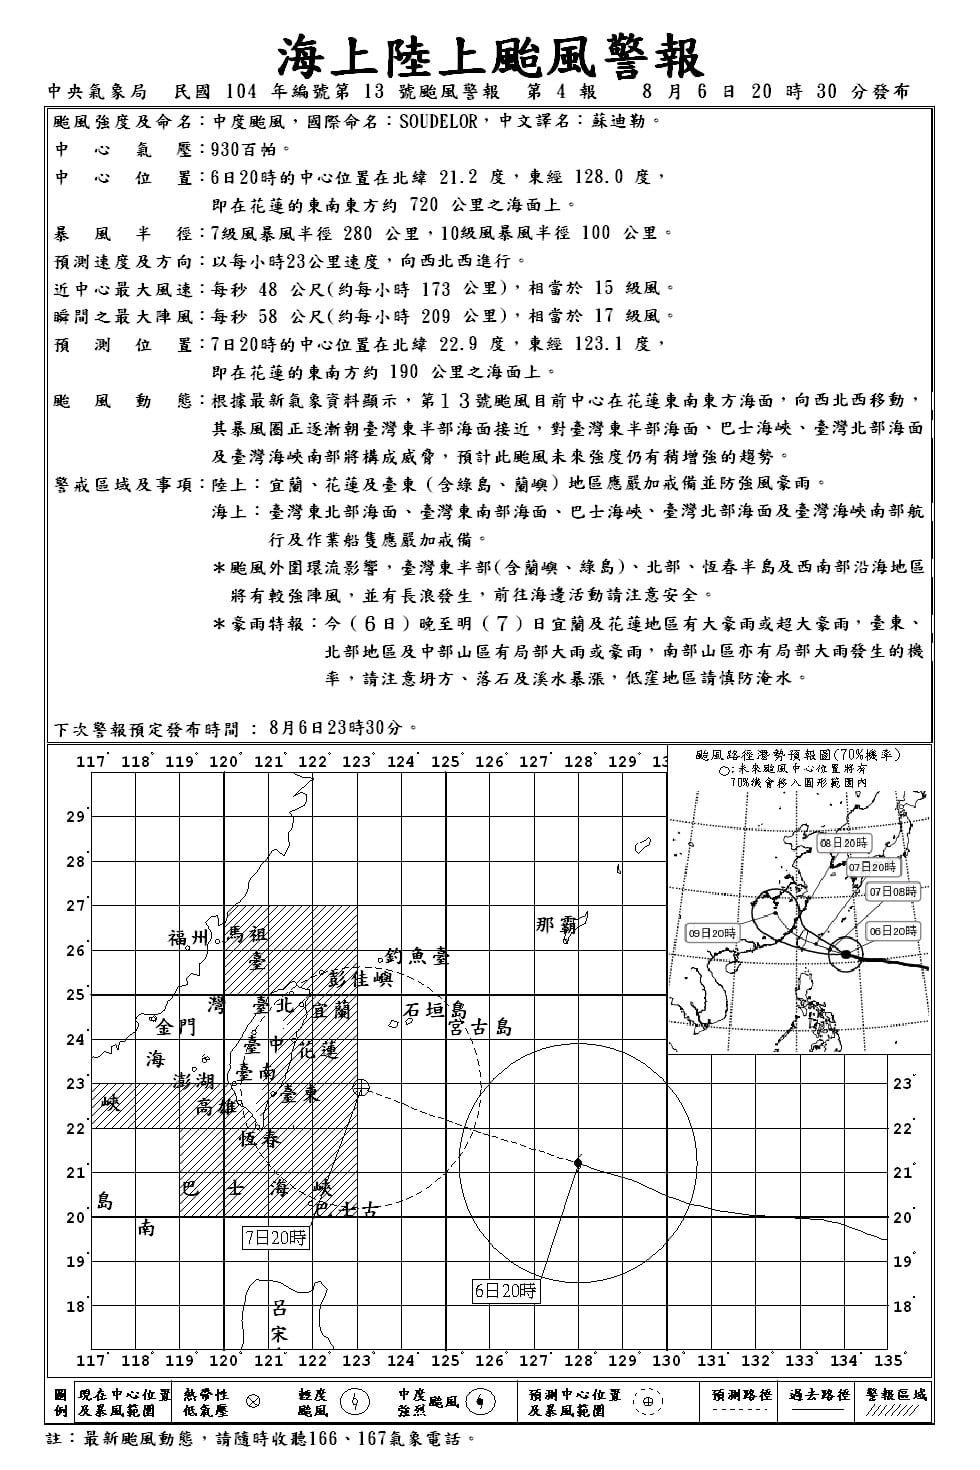 蘇迪勒颱風警報單-201508062030-陸上警報第一報.jpg - 日誌用相簿